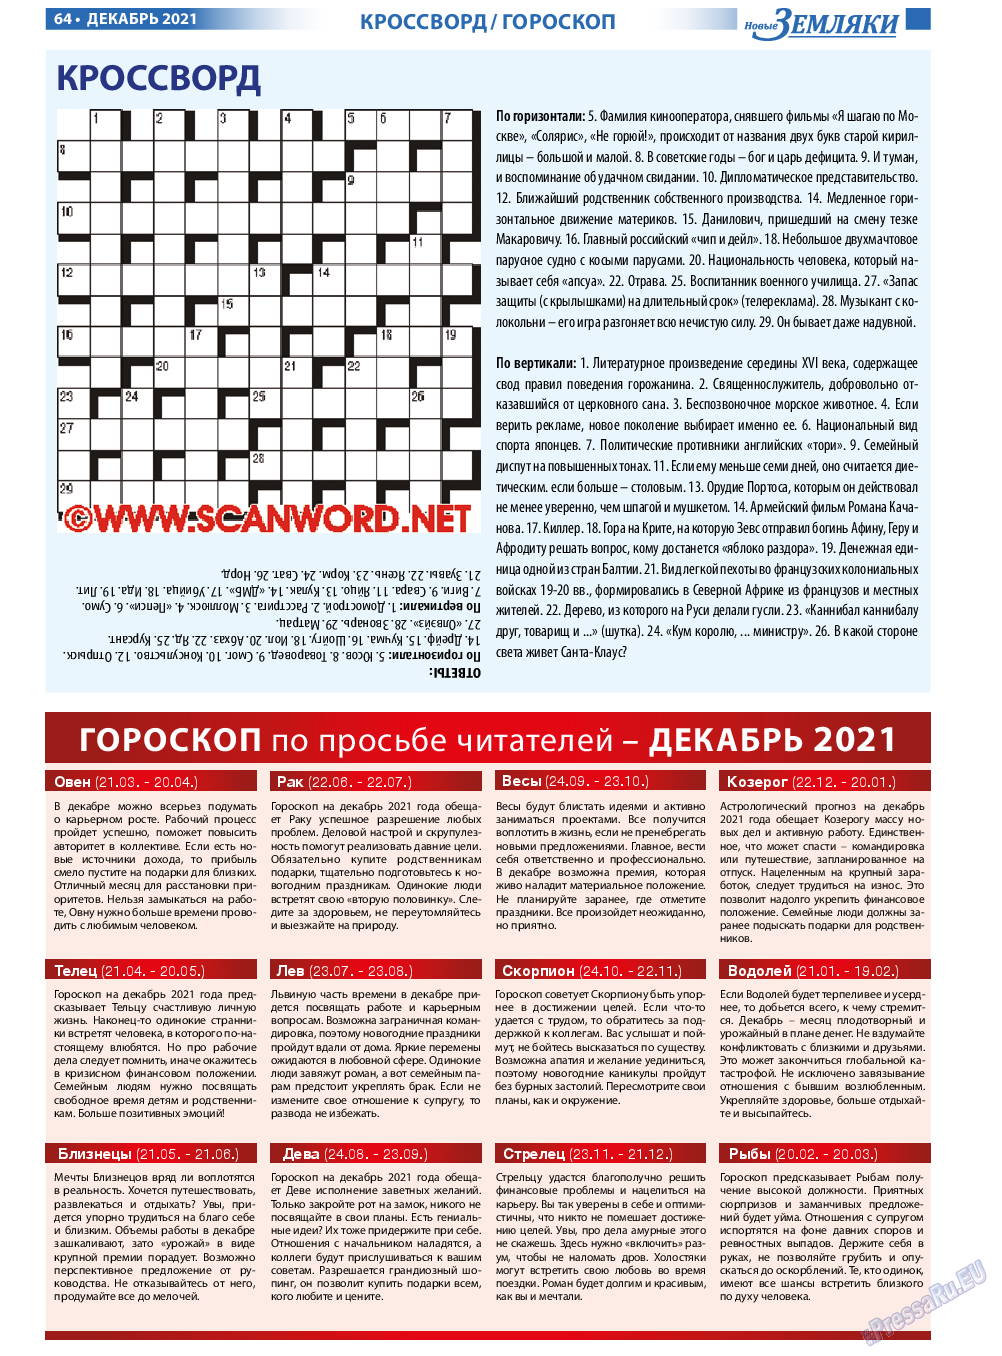 Новые Земляки, газета. 2021 №12 стр.64